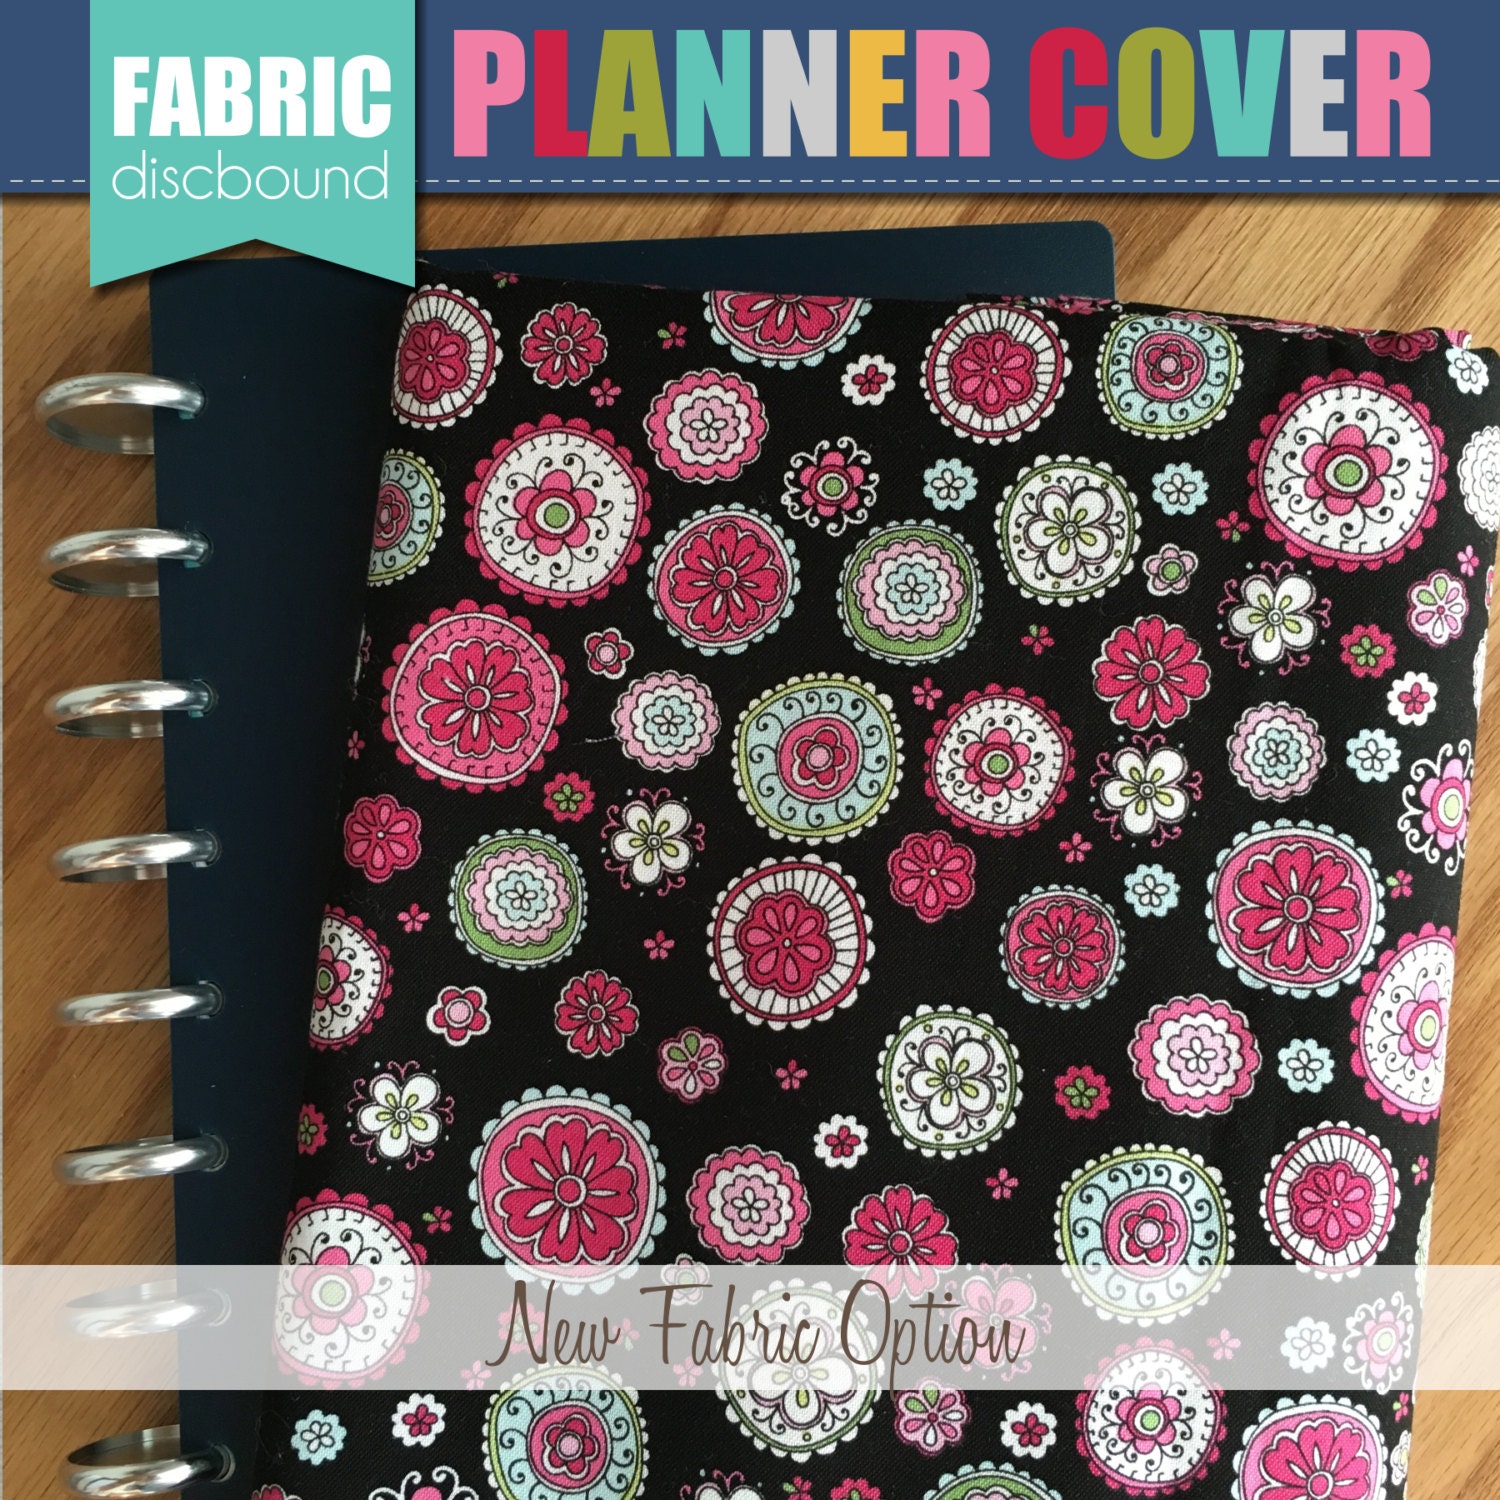 Discbound Planner Cover Hot Pink & Black by thepolkadotposie